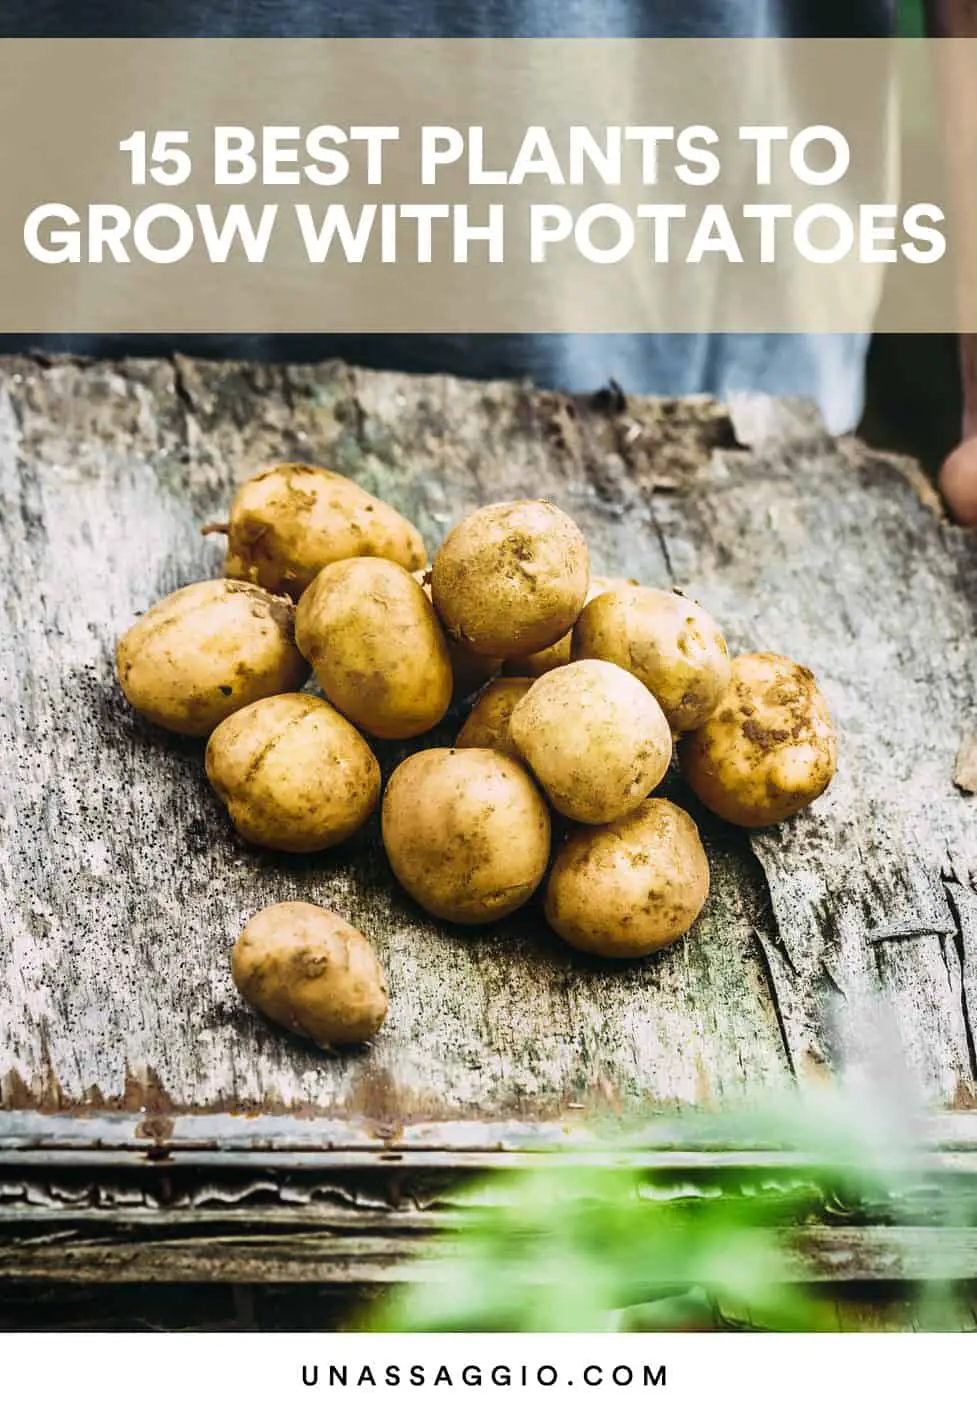 Potato companion plants